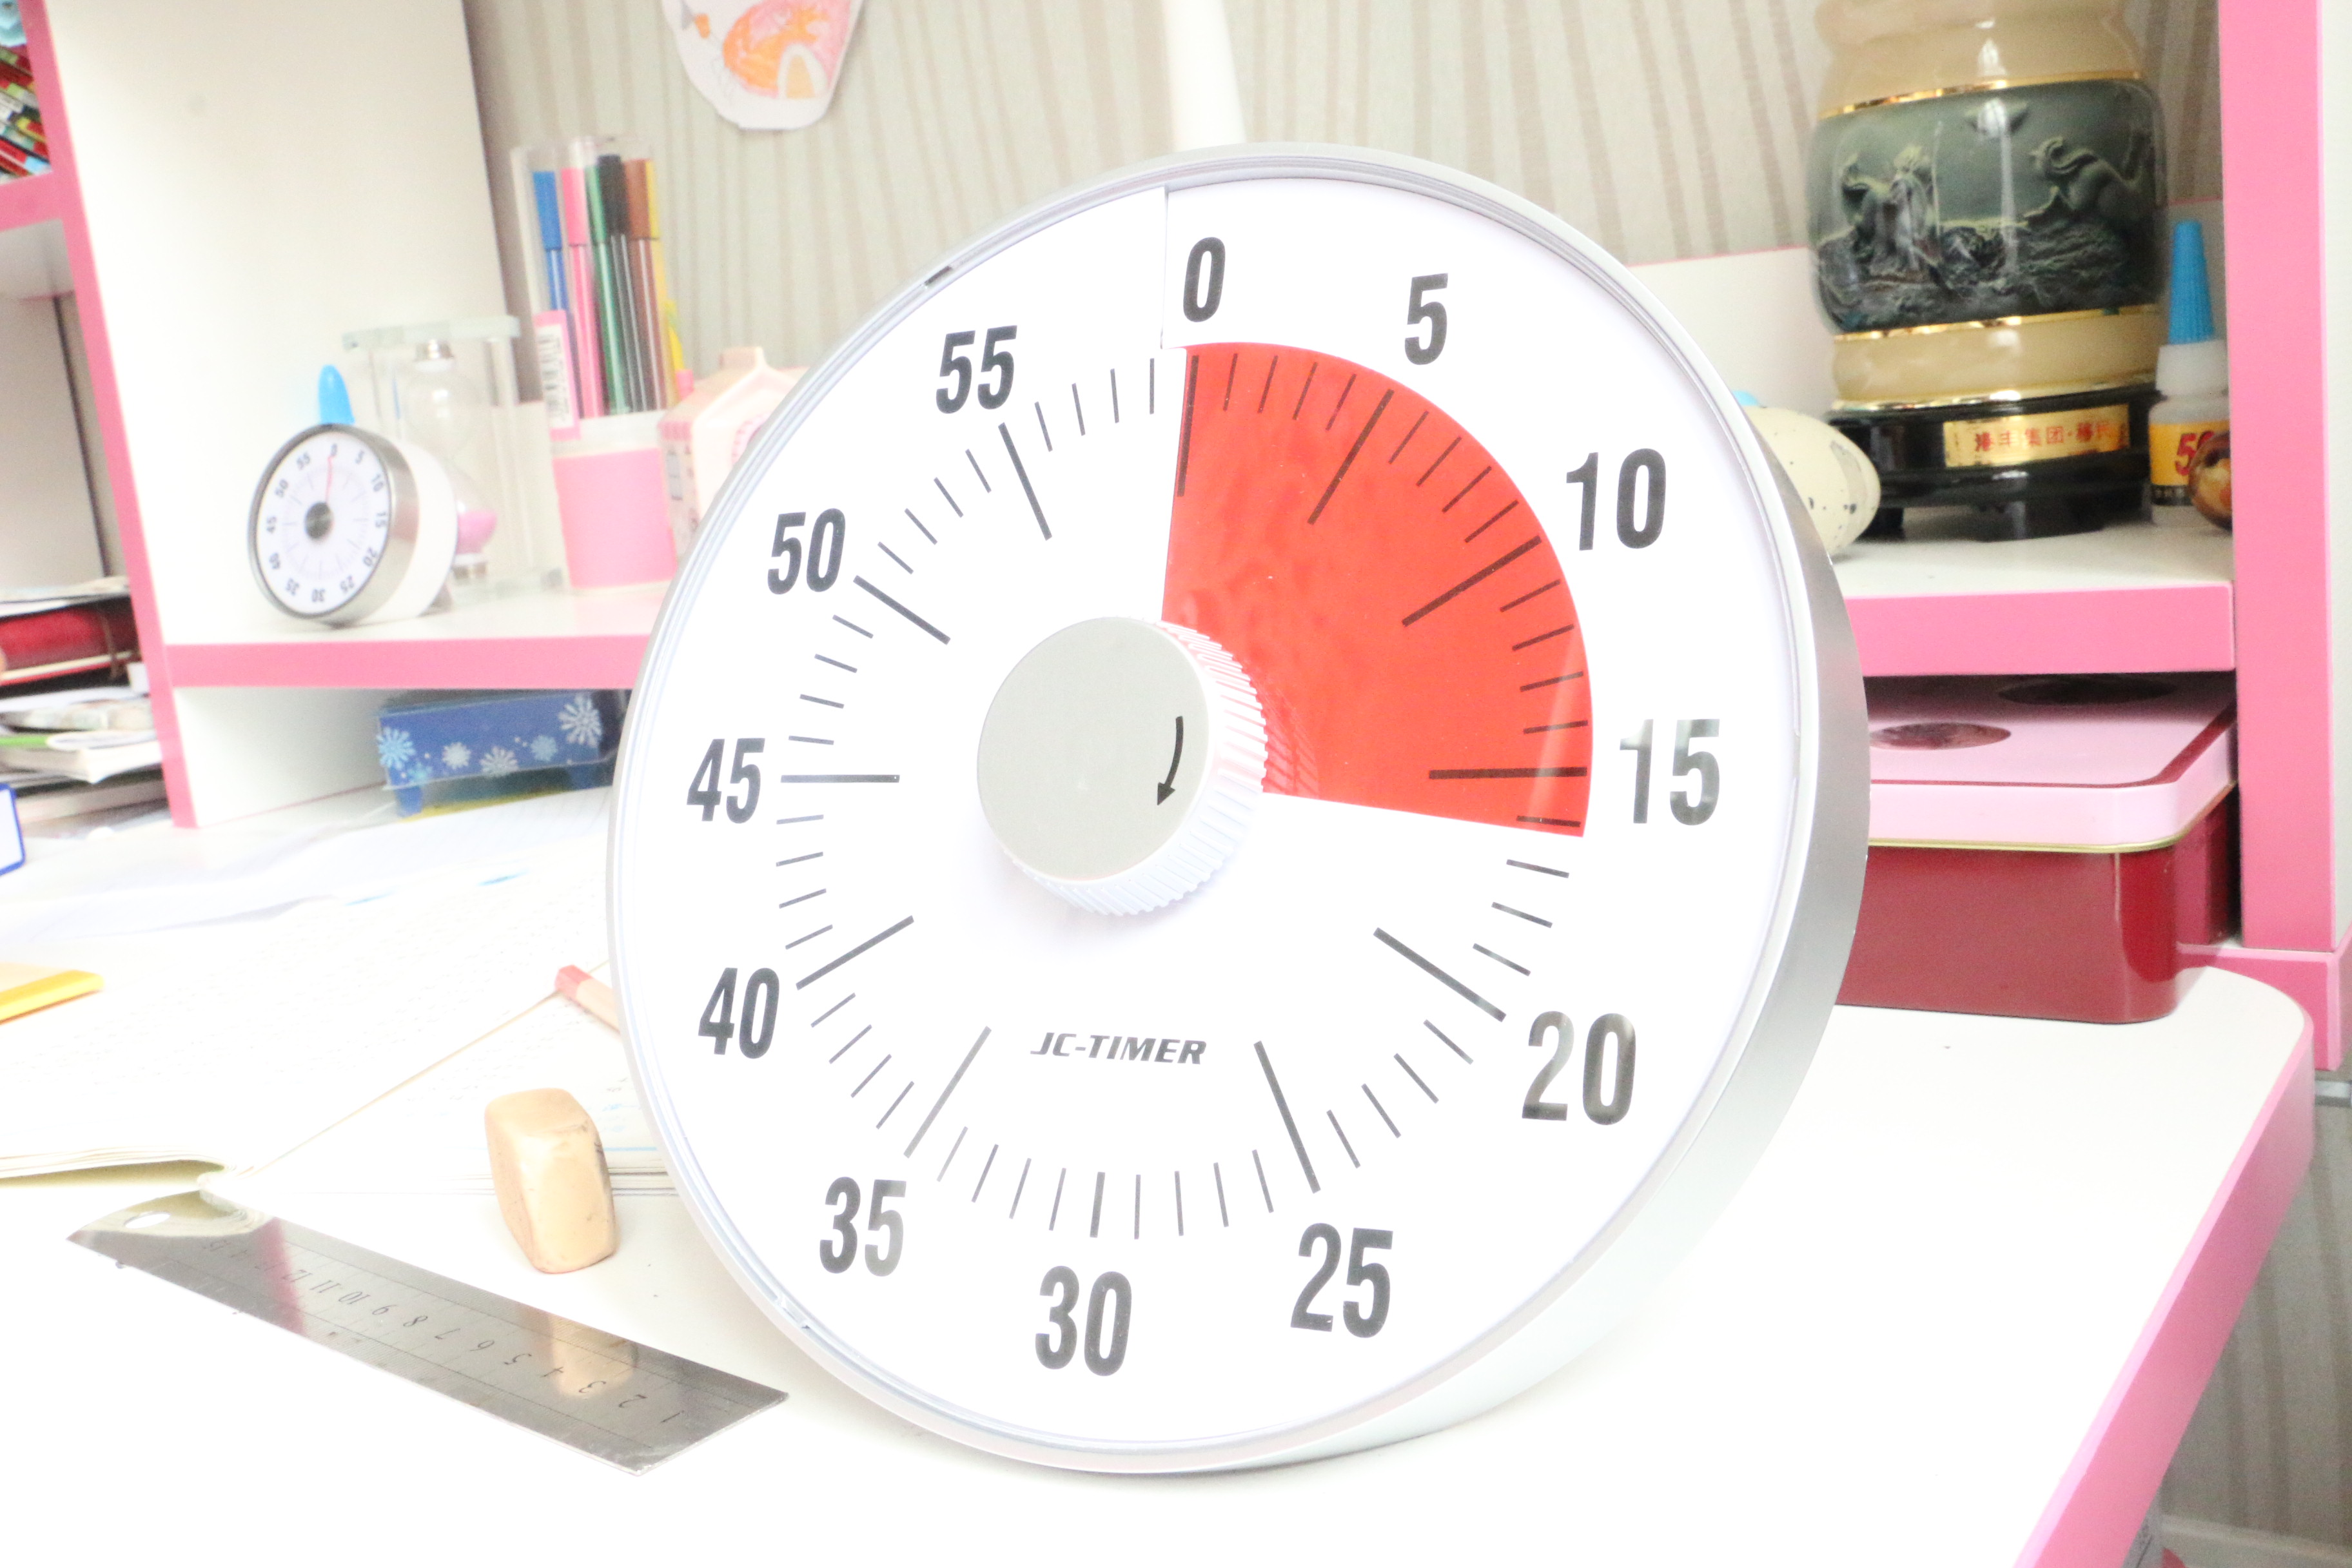 analog visual timer clock